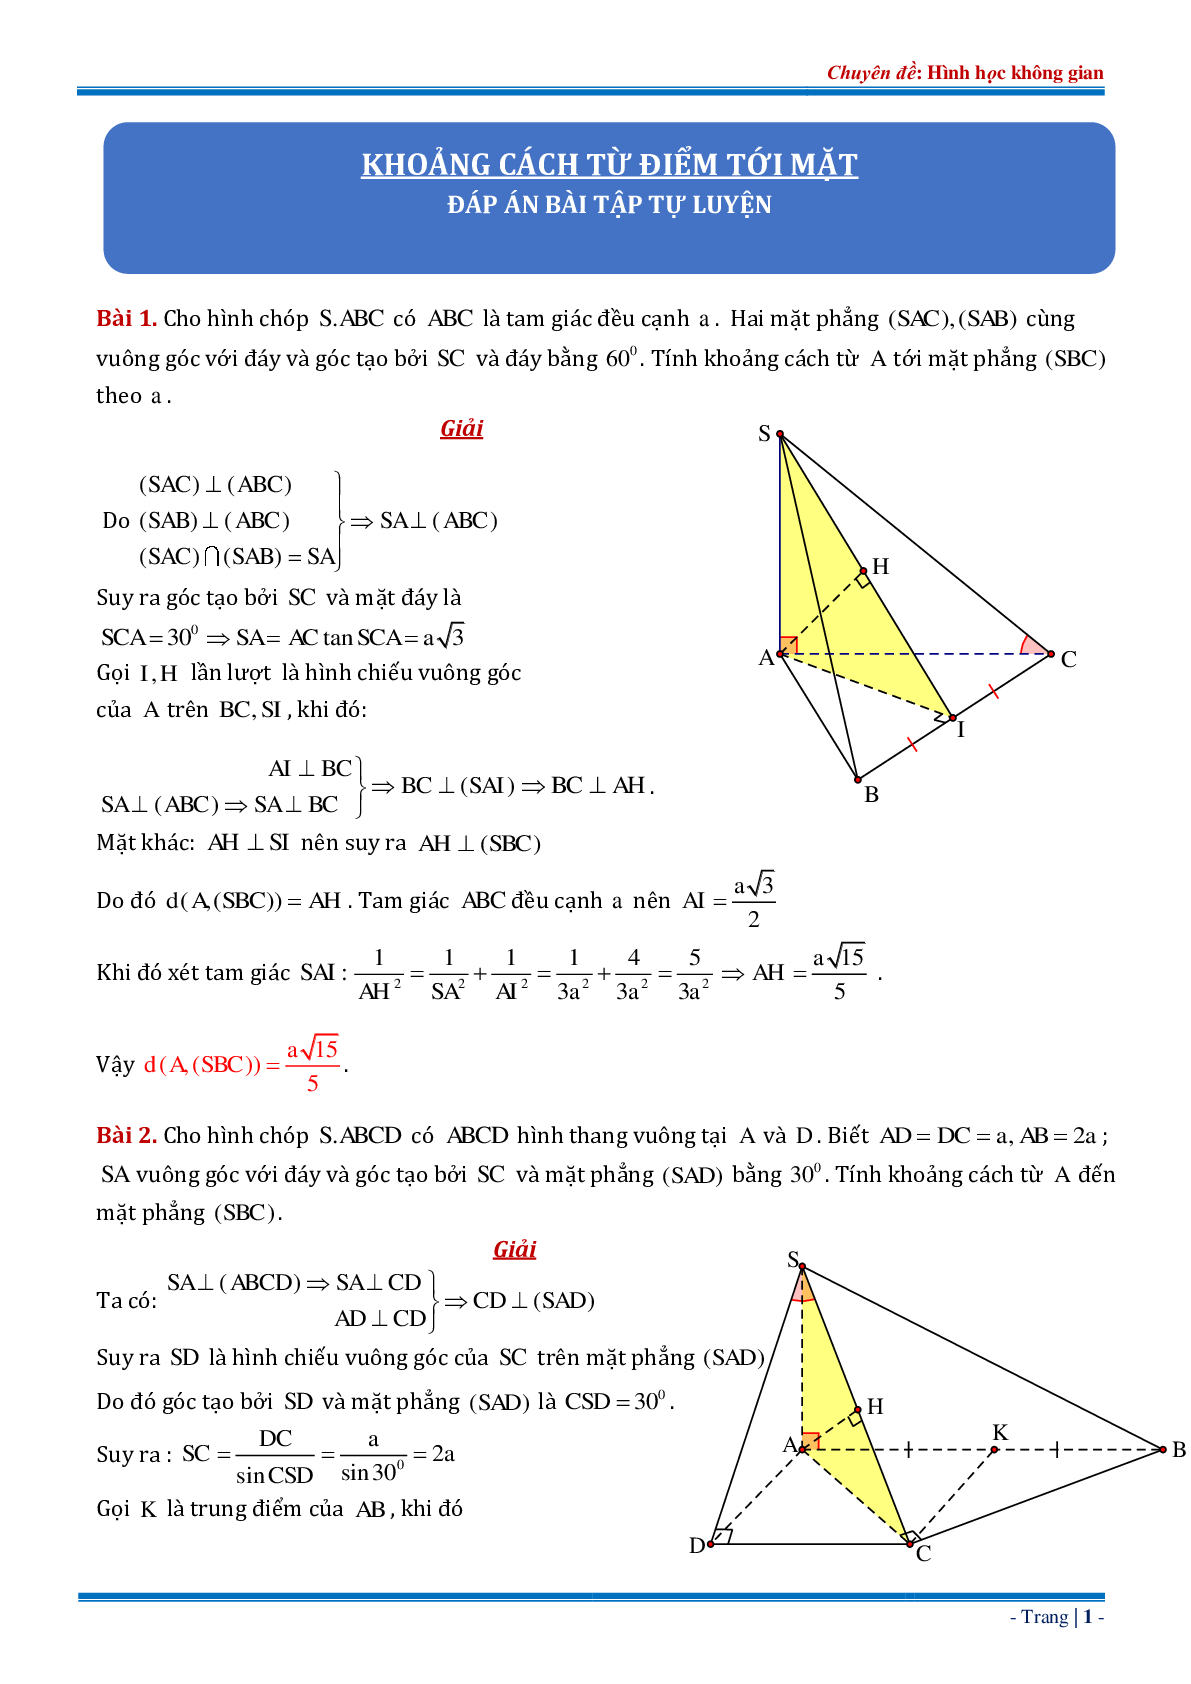 18 bài tập về khoảng cách từ điểm đến mặt phẳng dạng tổng hợp có đáp án chi tiết (trang 1)